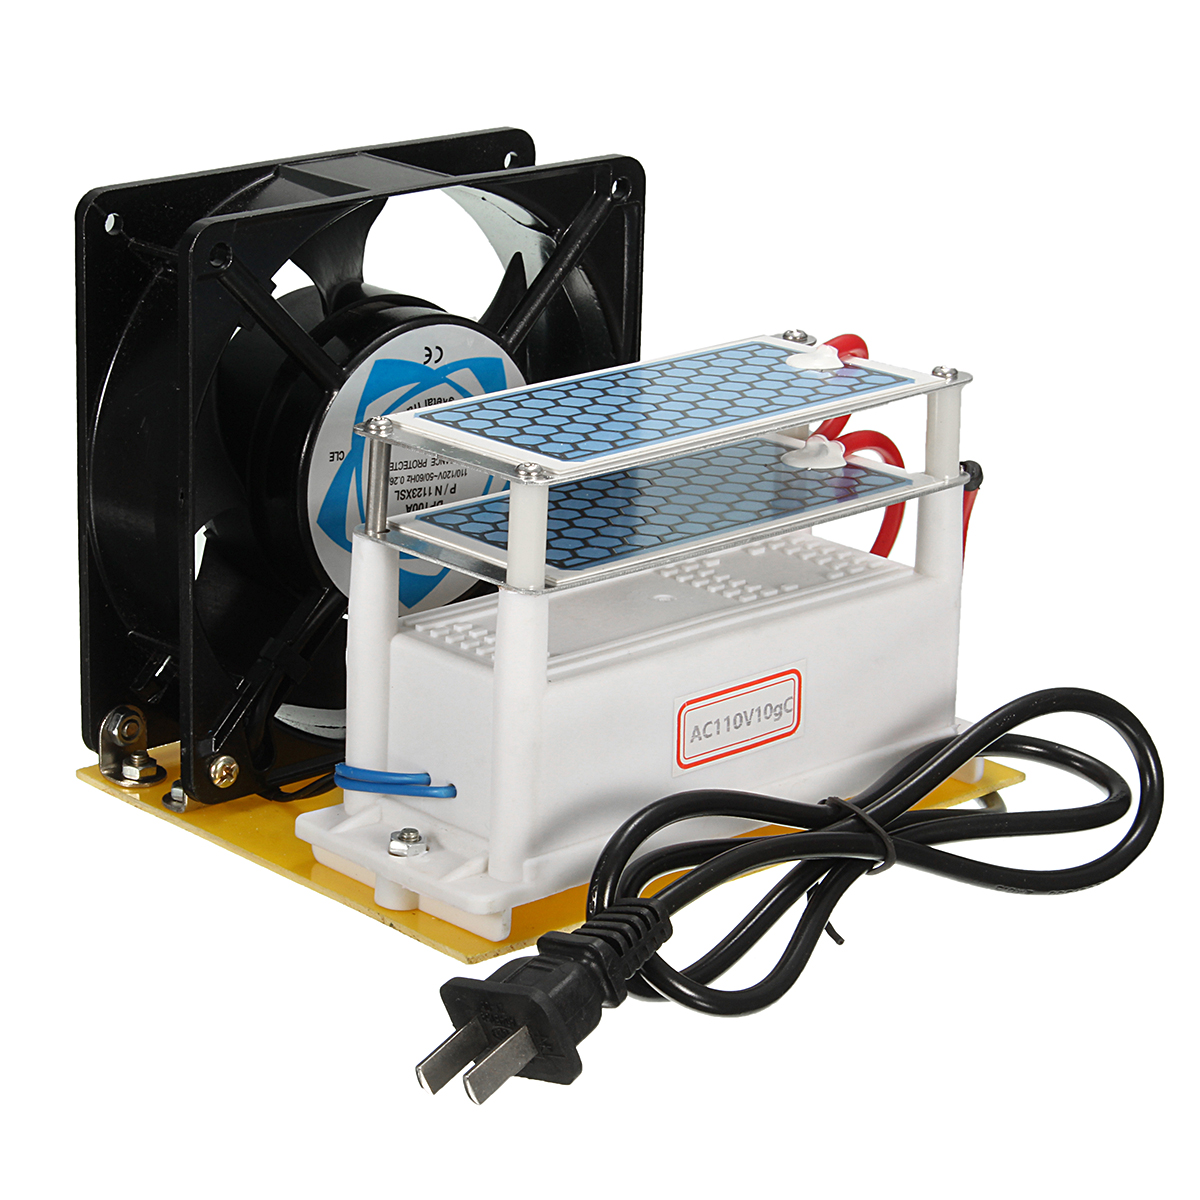 

AC110V 10Mg/H Heavy Duty Ozone Generator DIY with Blue Plates Treatment